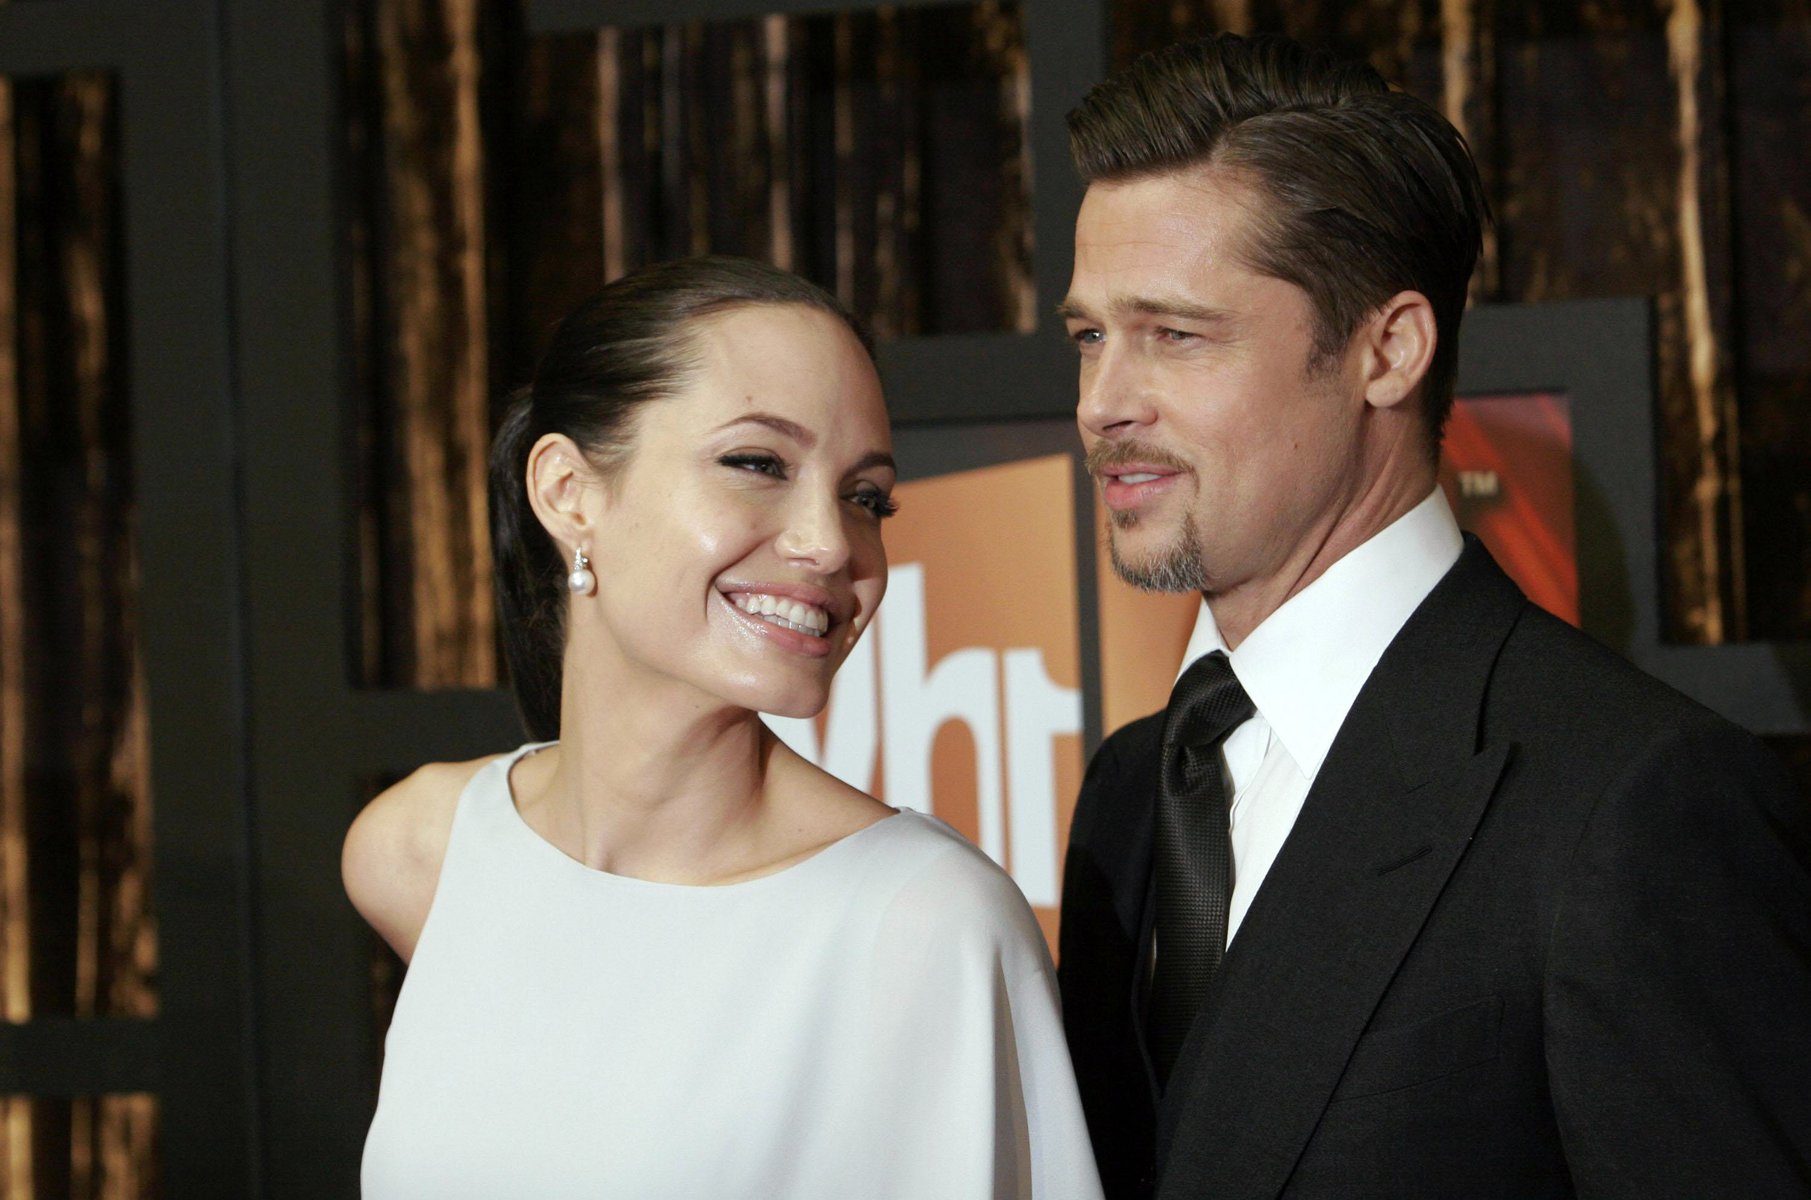 Νέες καταγγελίες της Jolie κατά του Pitt για τον καυγά στο αεροπλάνο: Ο ηθοποιός έπιασε ένα παιδί από το λαιμό